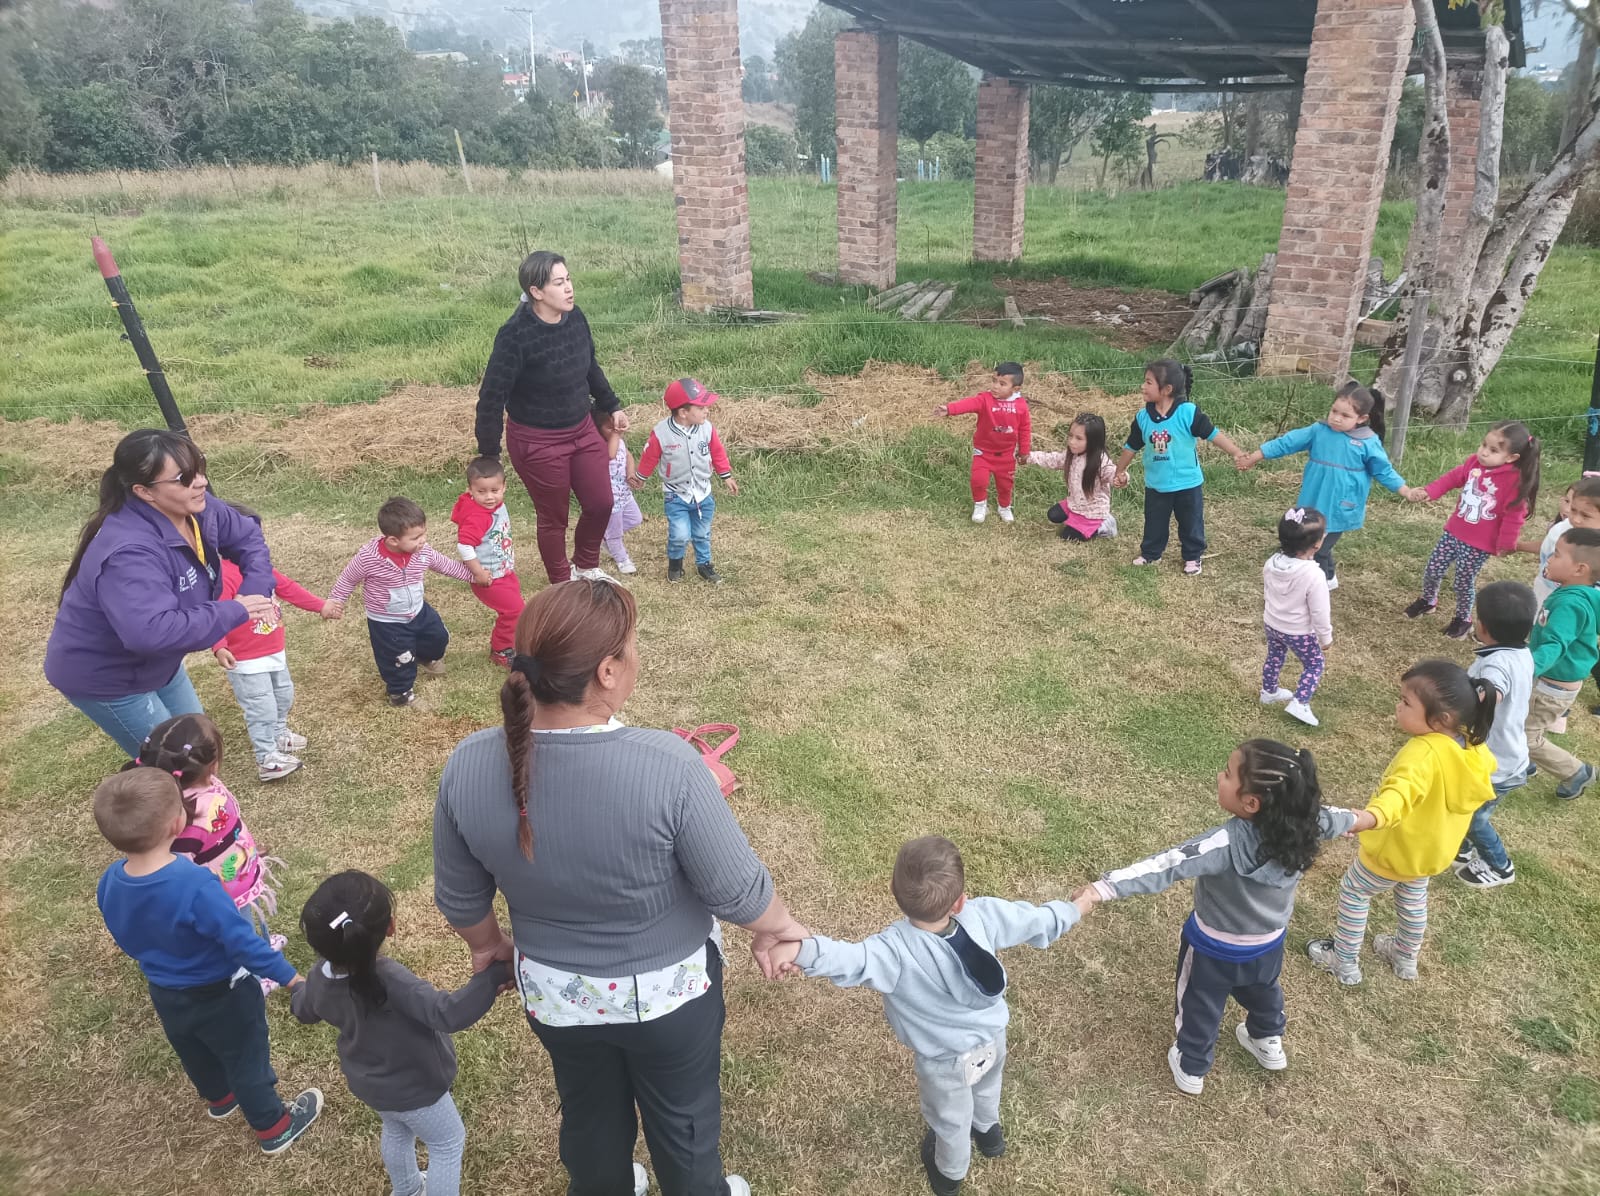 niños tomados de la mano en círculo jugando al aire libre